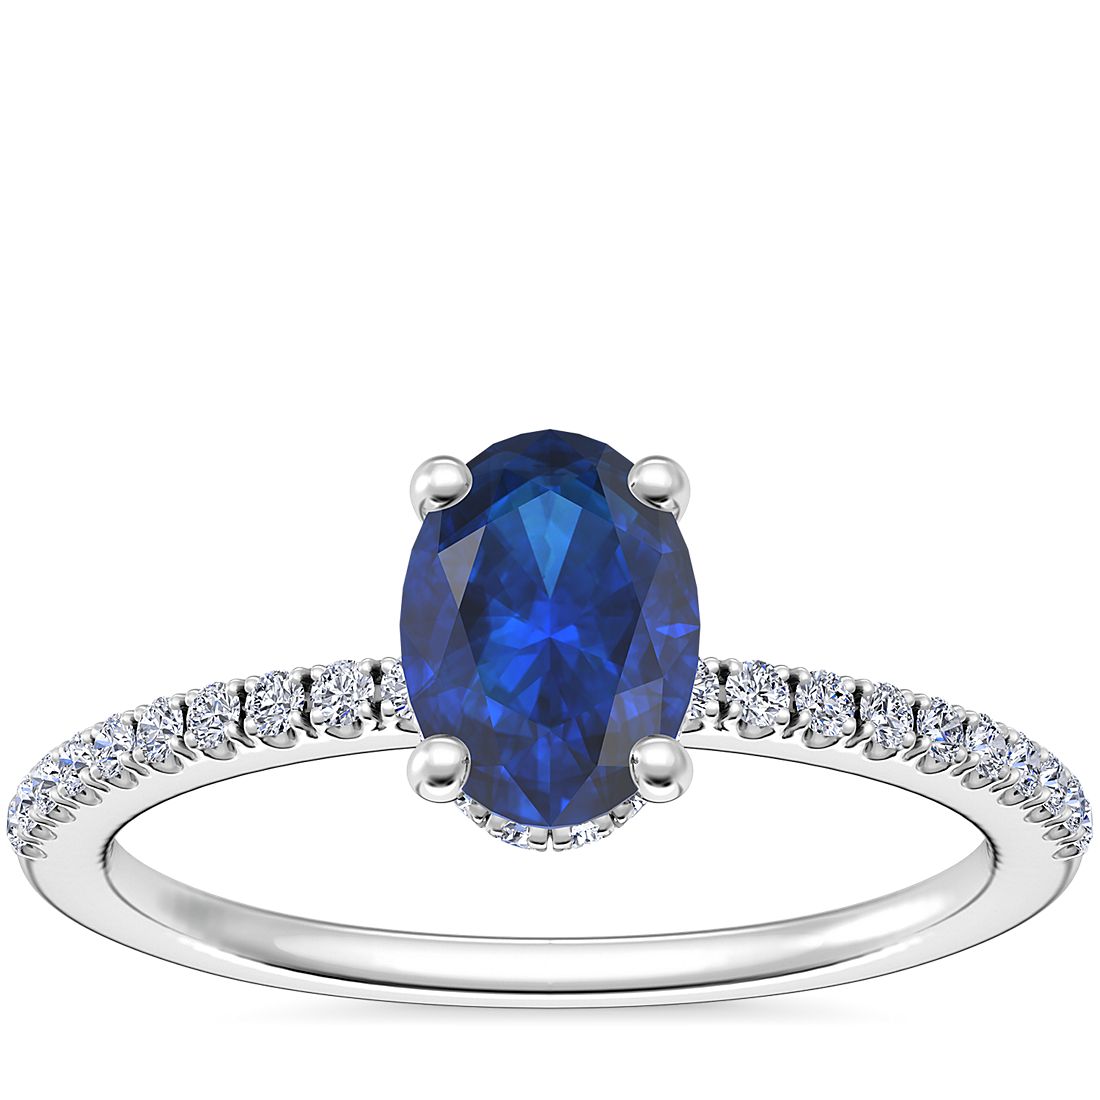 鉑金小巧微密釘隱藏光環訂婚戒指搭橢圓形藍寶石（7x5 毫米）